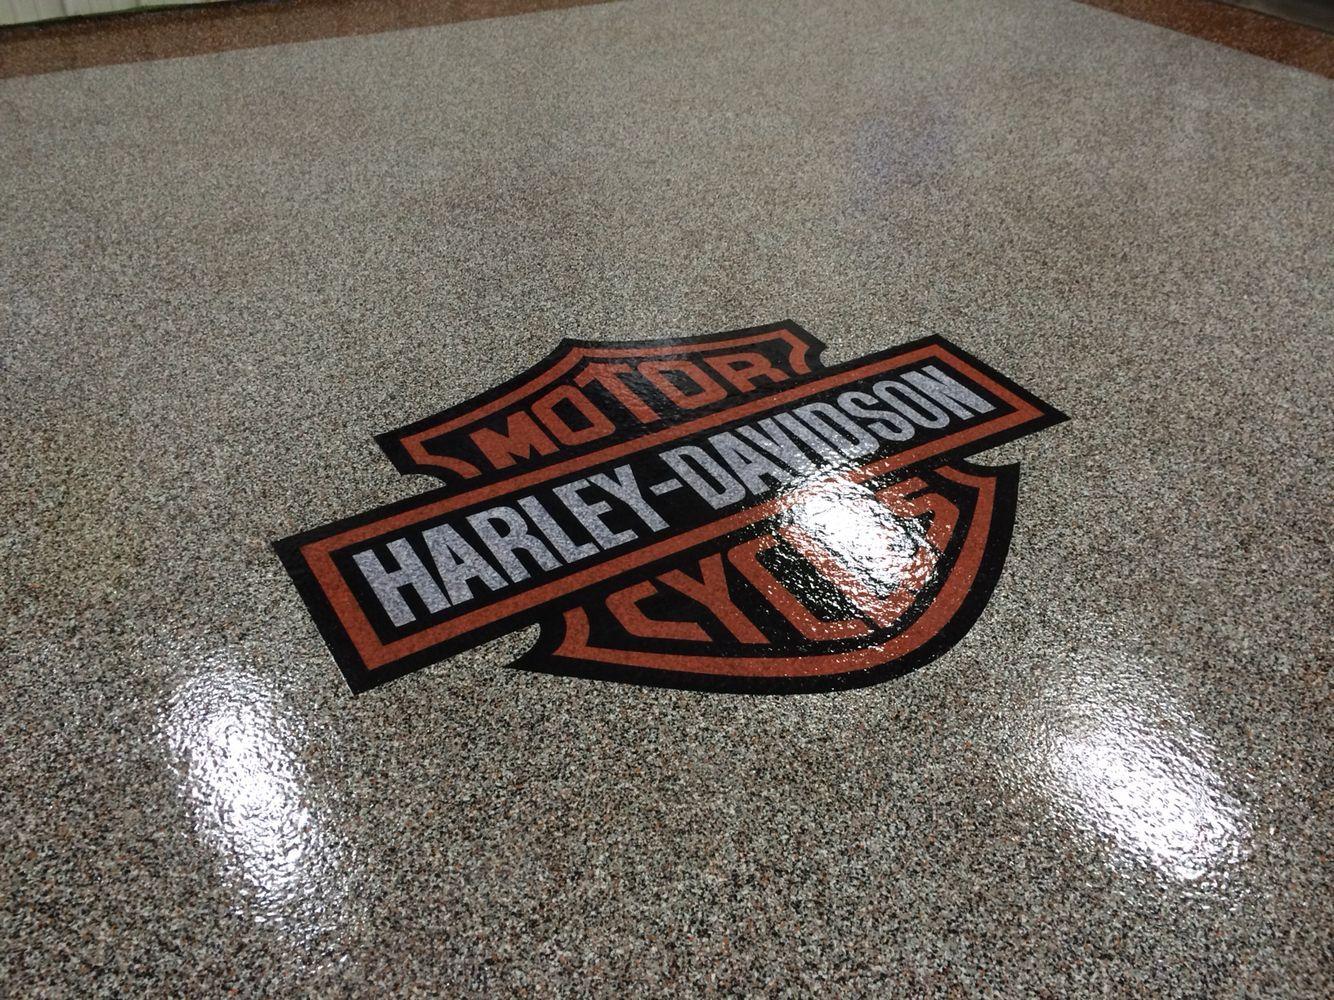 Garage Floor Logo - Epoxy chip garage floor with Harley Davidson logo installed